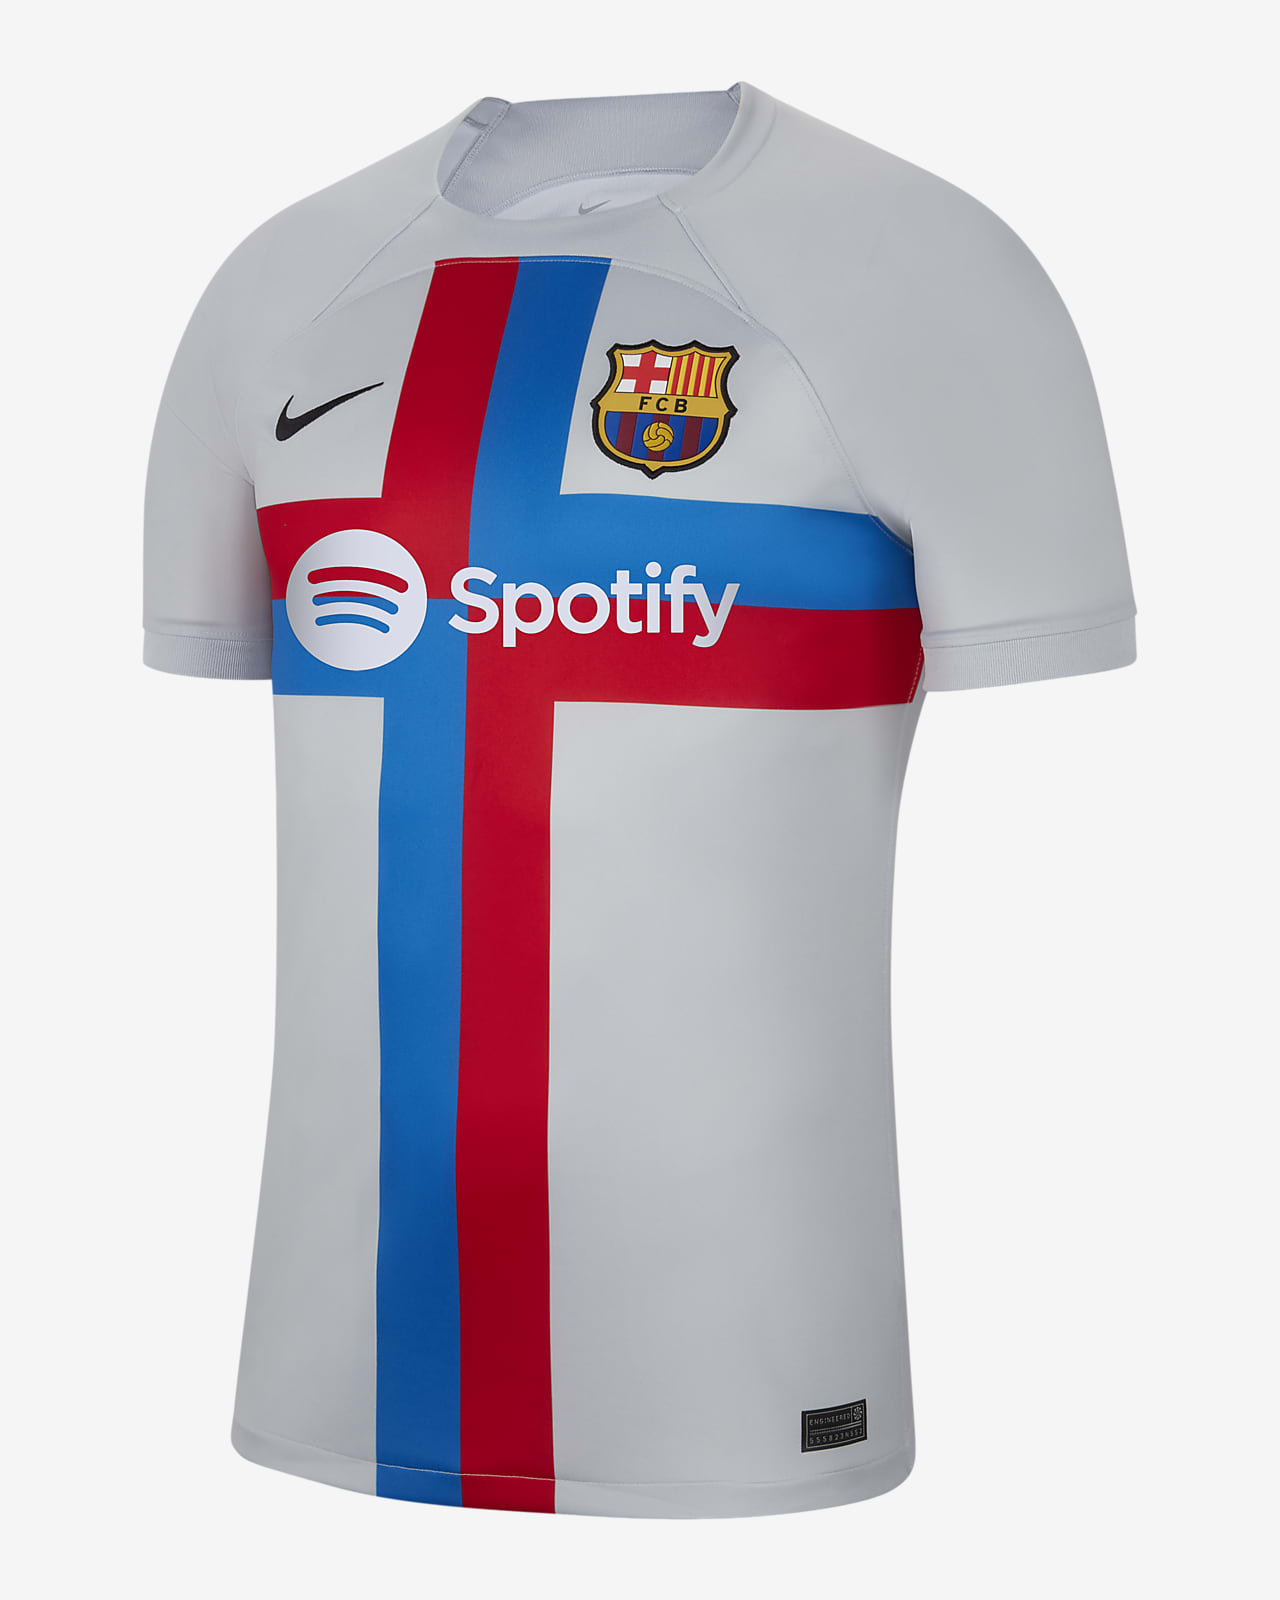 Camiseta De Barcelona 2022 Ubicaciondepersonas Cdmx Gob Mx